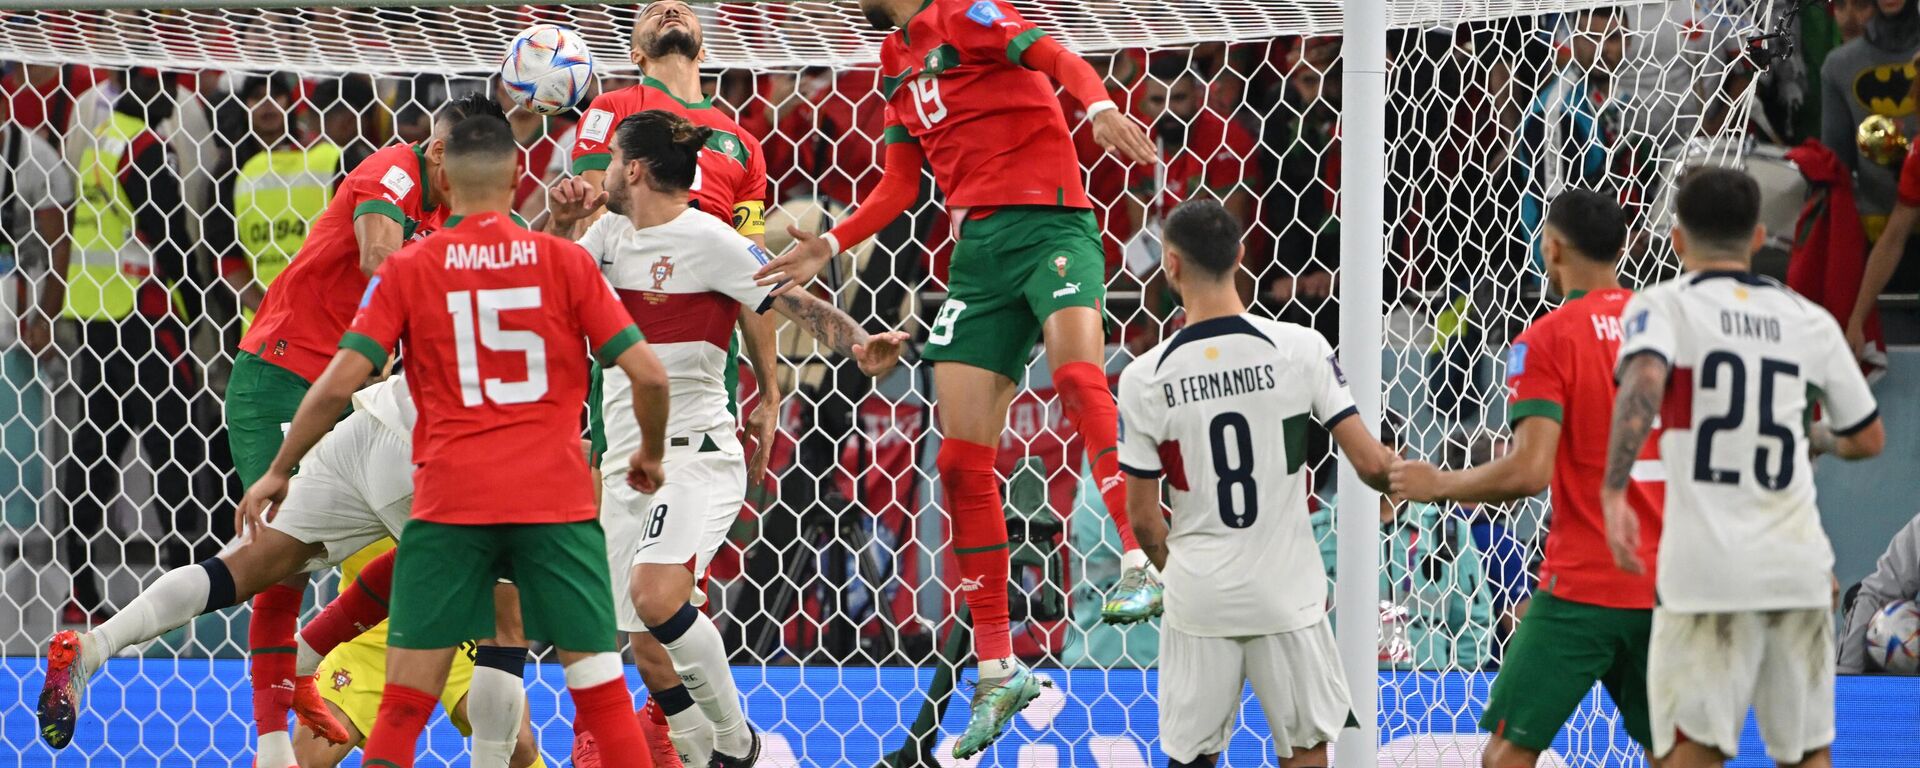 Youssef En-Nesyri, delantero marroquí  marcó un gol durante el partido entre Marruecos y Portugal, en el estadio Al Thumama de Doha, Catar, 10 de diciembre de 2022 - Sputnik Mundo, 1920, 12.12.2022